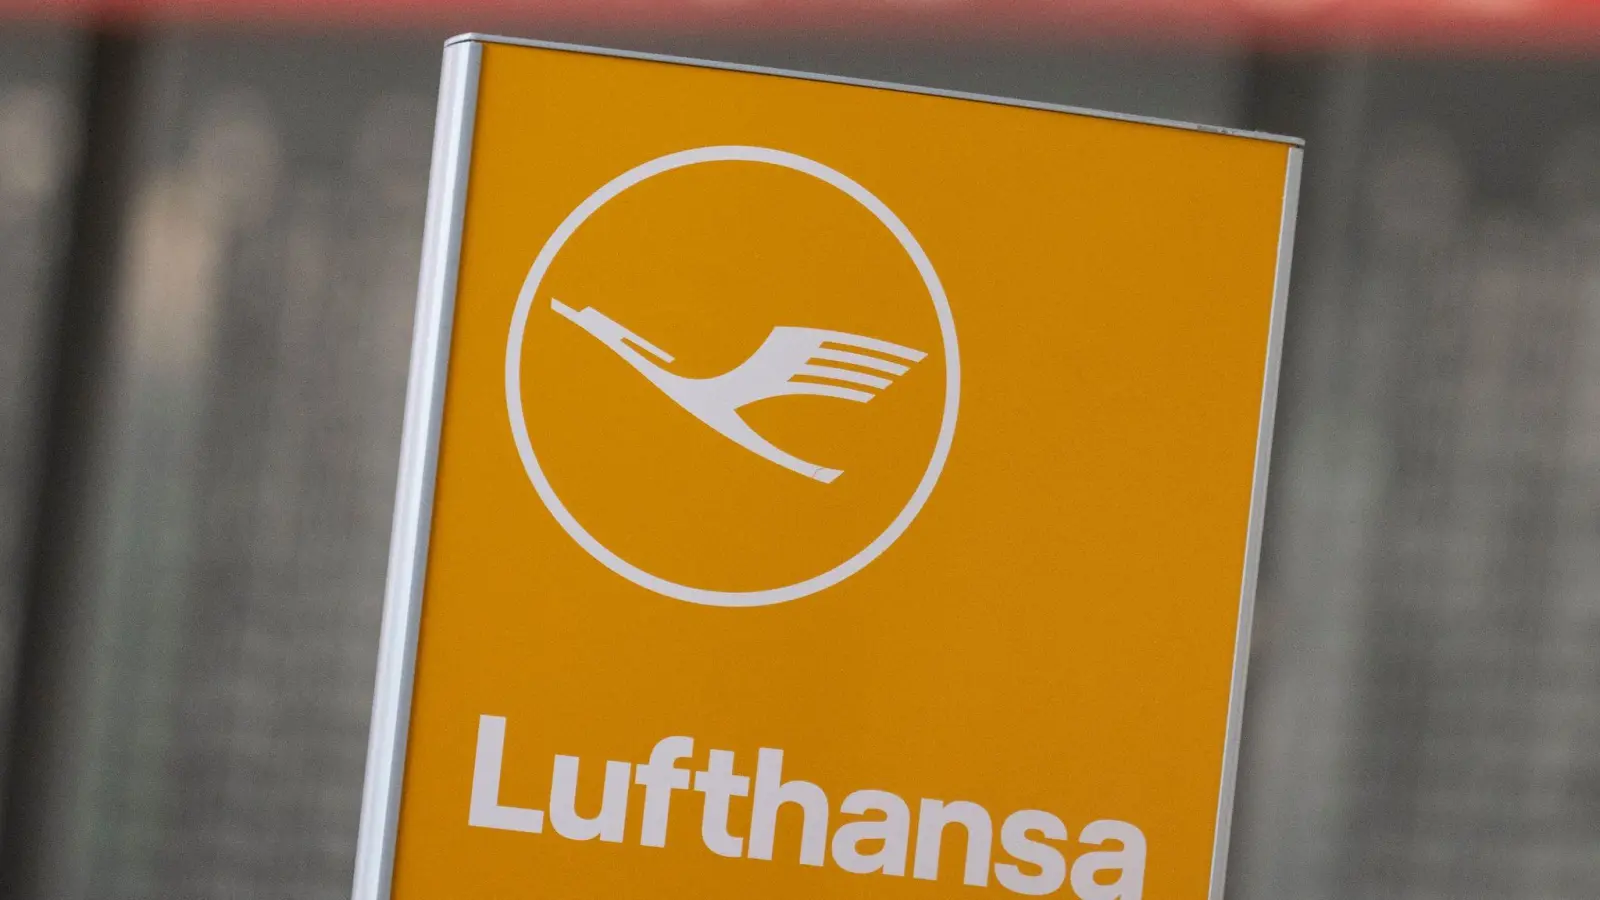 Der Weg zur vollständigen Übernahme von Ita Airways durch die Lufthansa ist laut Konzernchef Spohr klar vereinbart. (Foto: Boris Roessler/dpa)